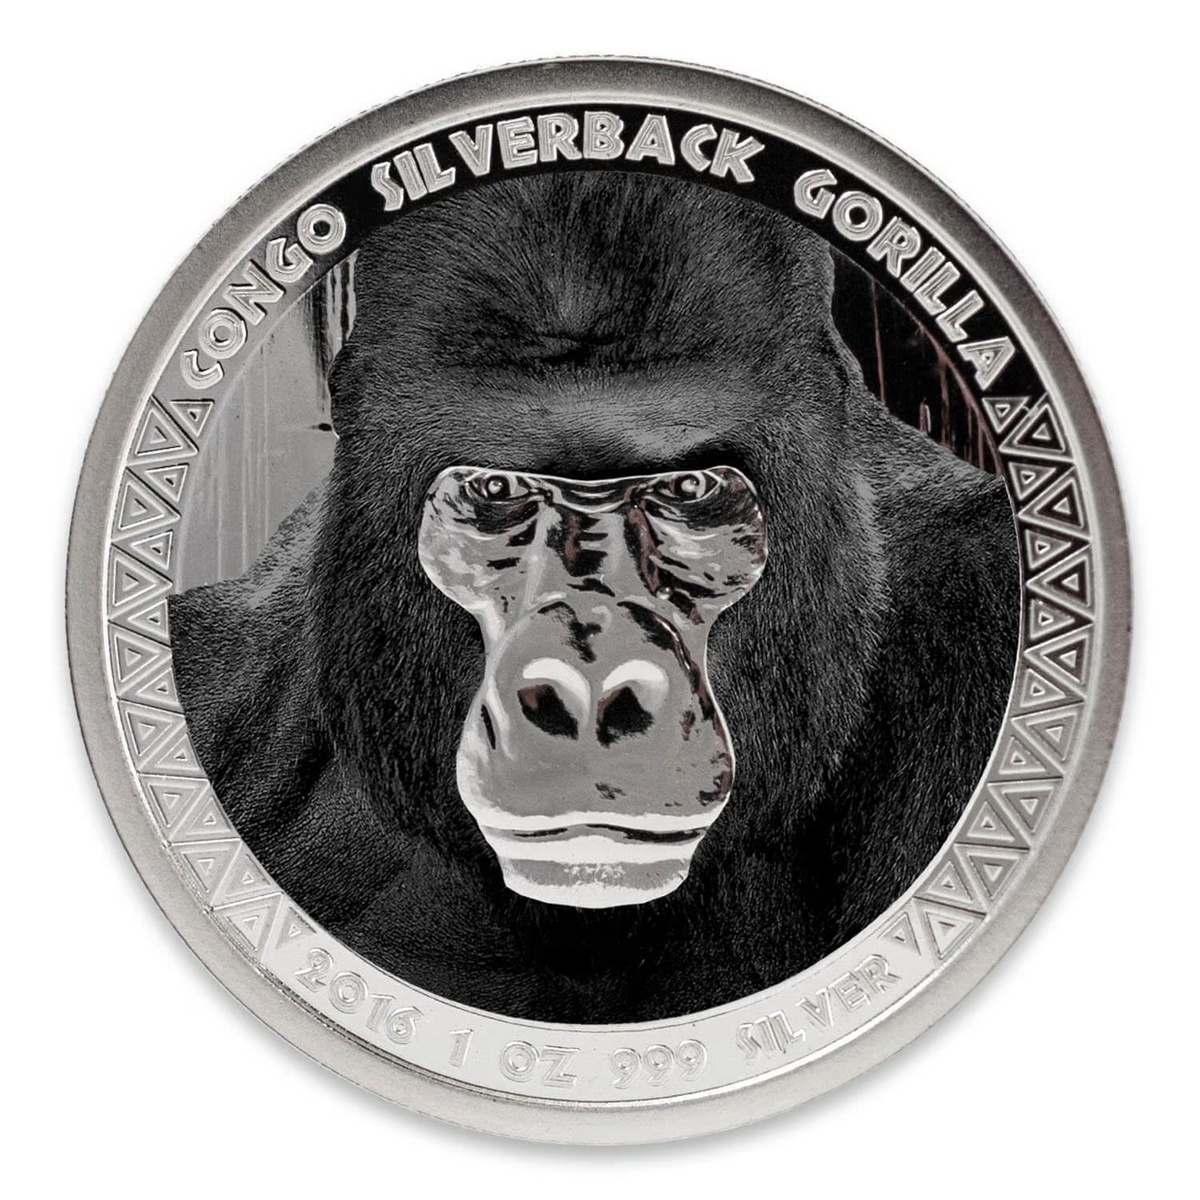 1 Oz Silver Coin 2016 5000 CFA Francs Congo Scottsdale Color Silverback Gorilla-classypw.com-1